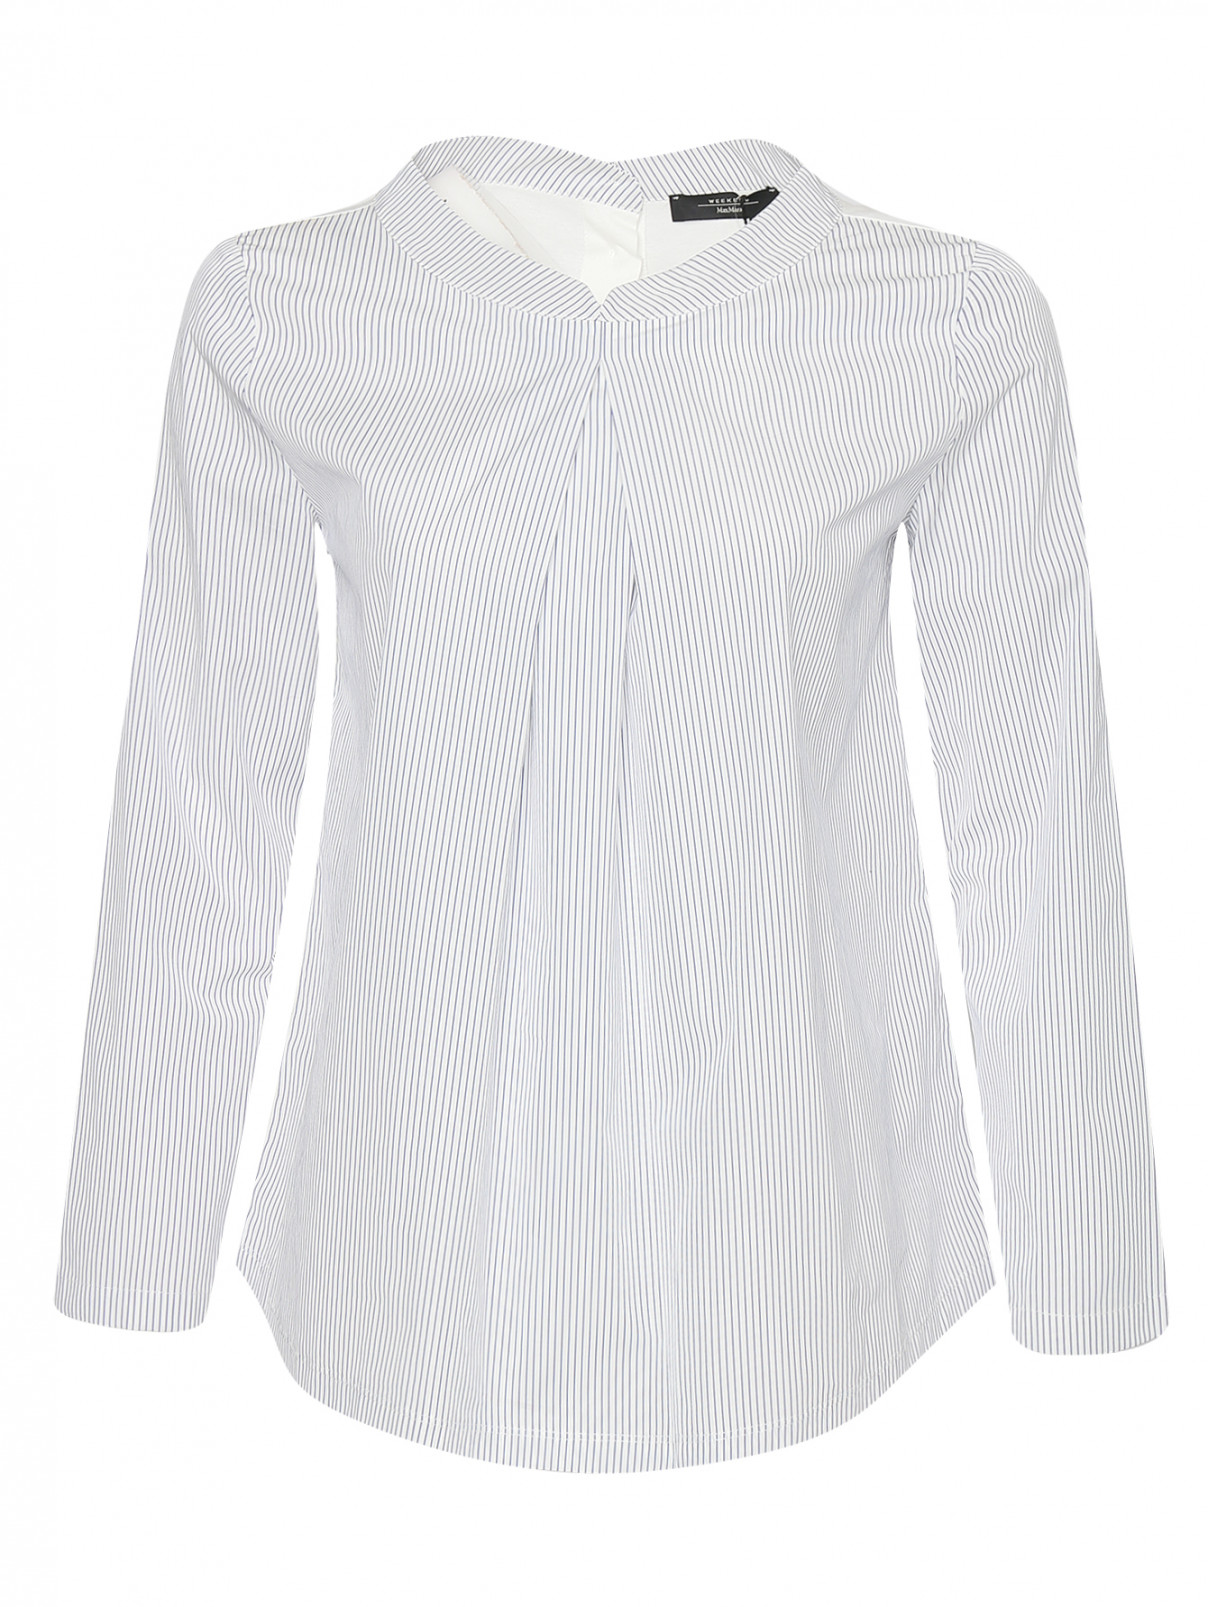 Блуза из хлопка с узором полоска Weekend Max Mara  –  Общий вид  – Цвет:  Узор